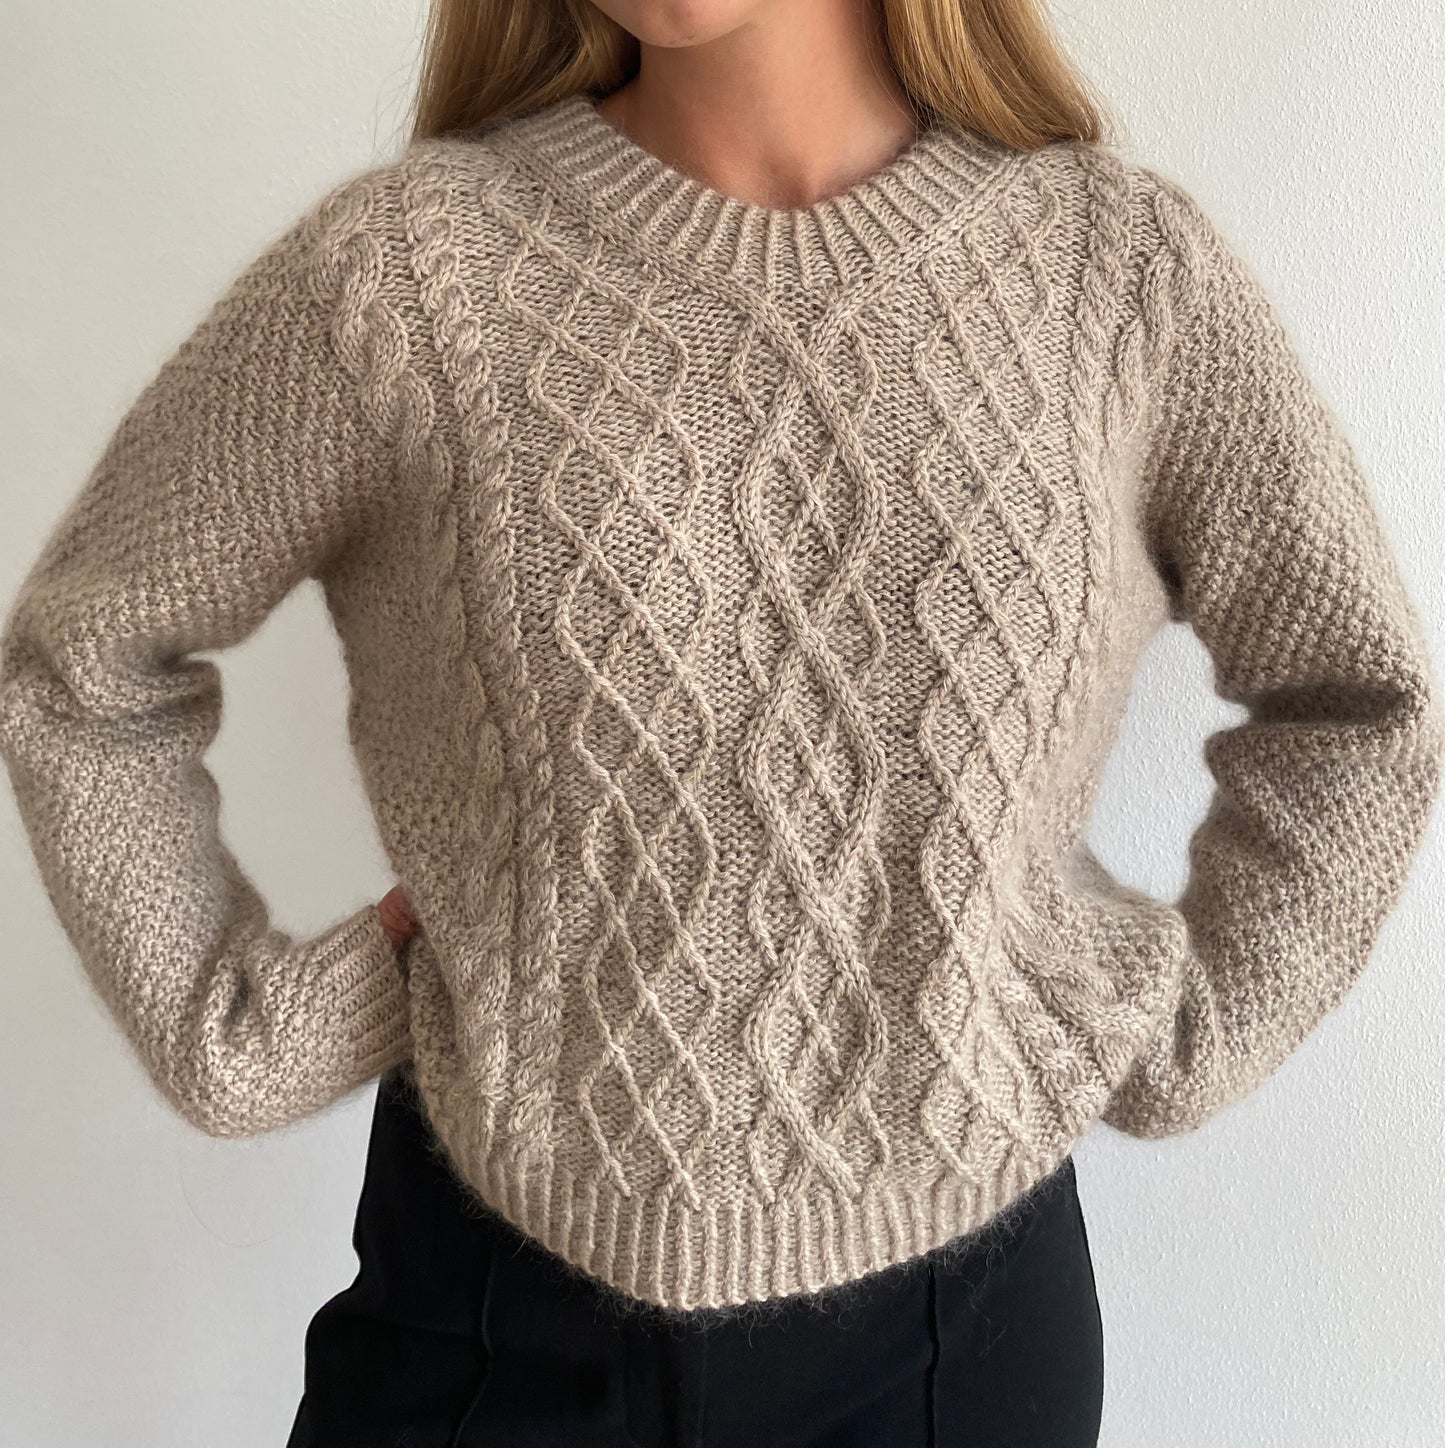 Swirl Sweater Chunky - Dansk